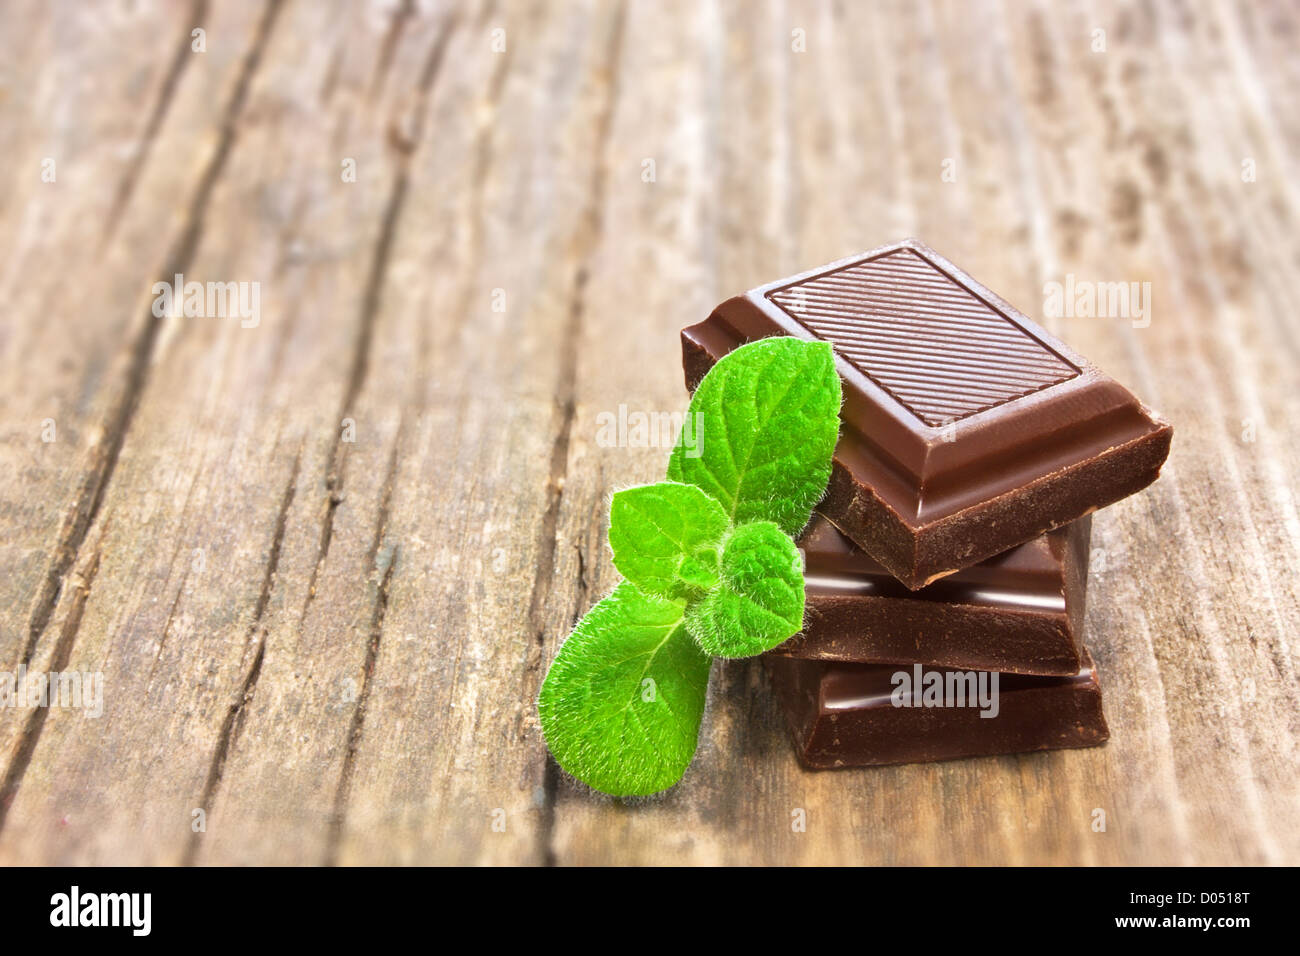 Dunkler Schokolade mit frischer Minze Blätter auf hölzernen Hintergrund Stockfoto